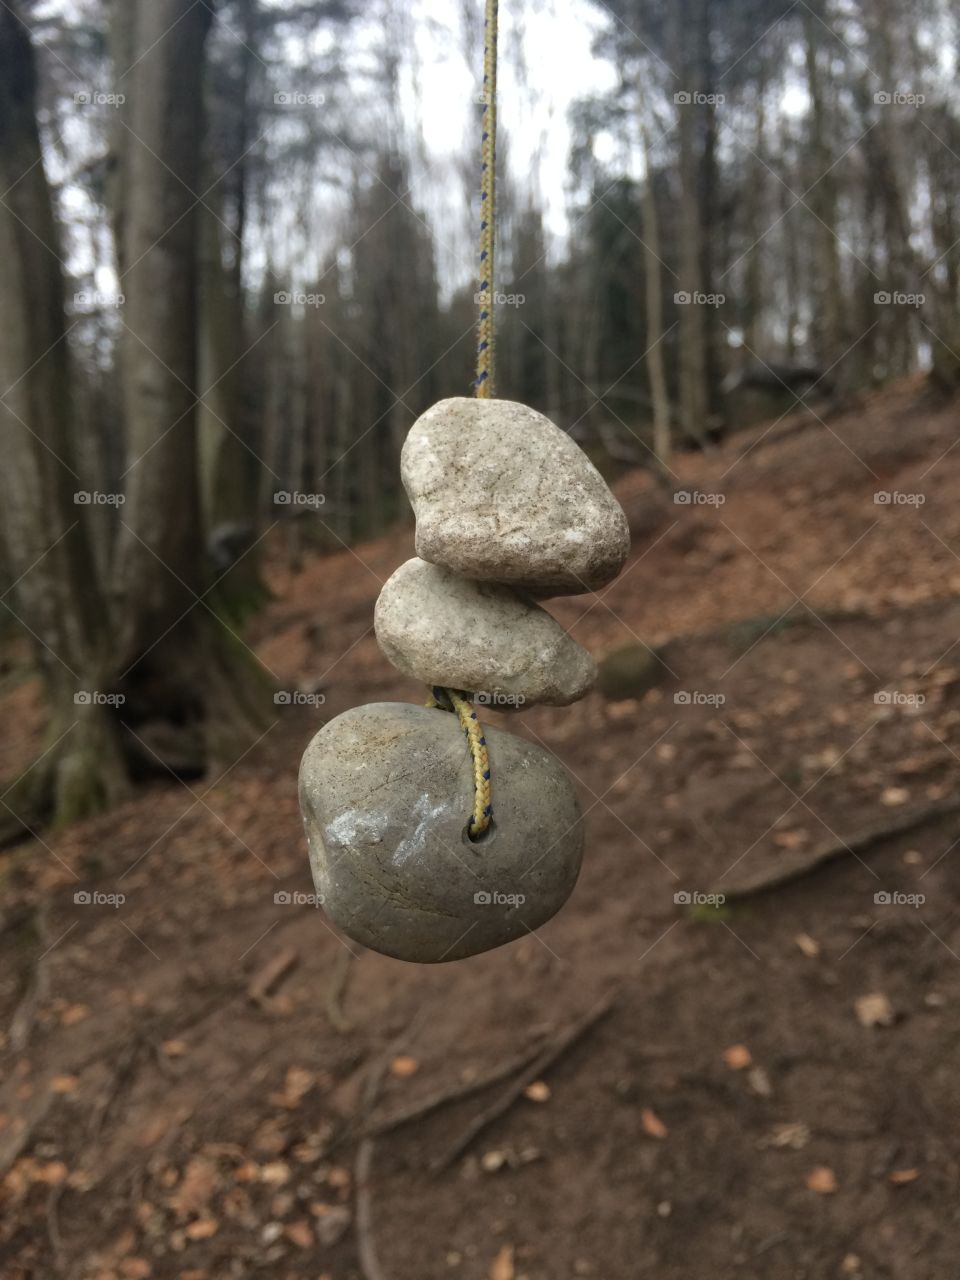 Focused on stones